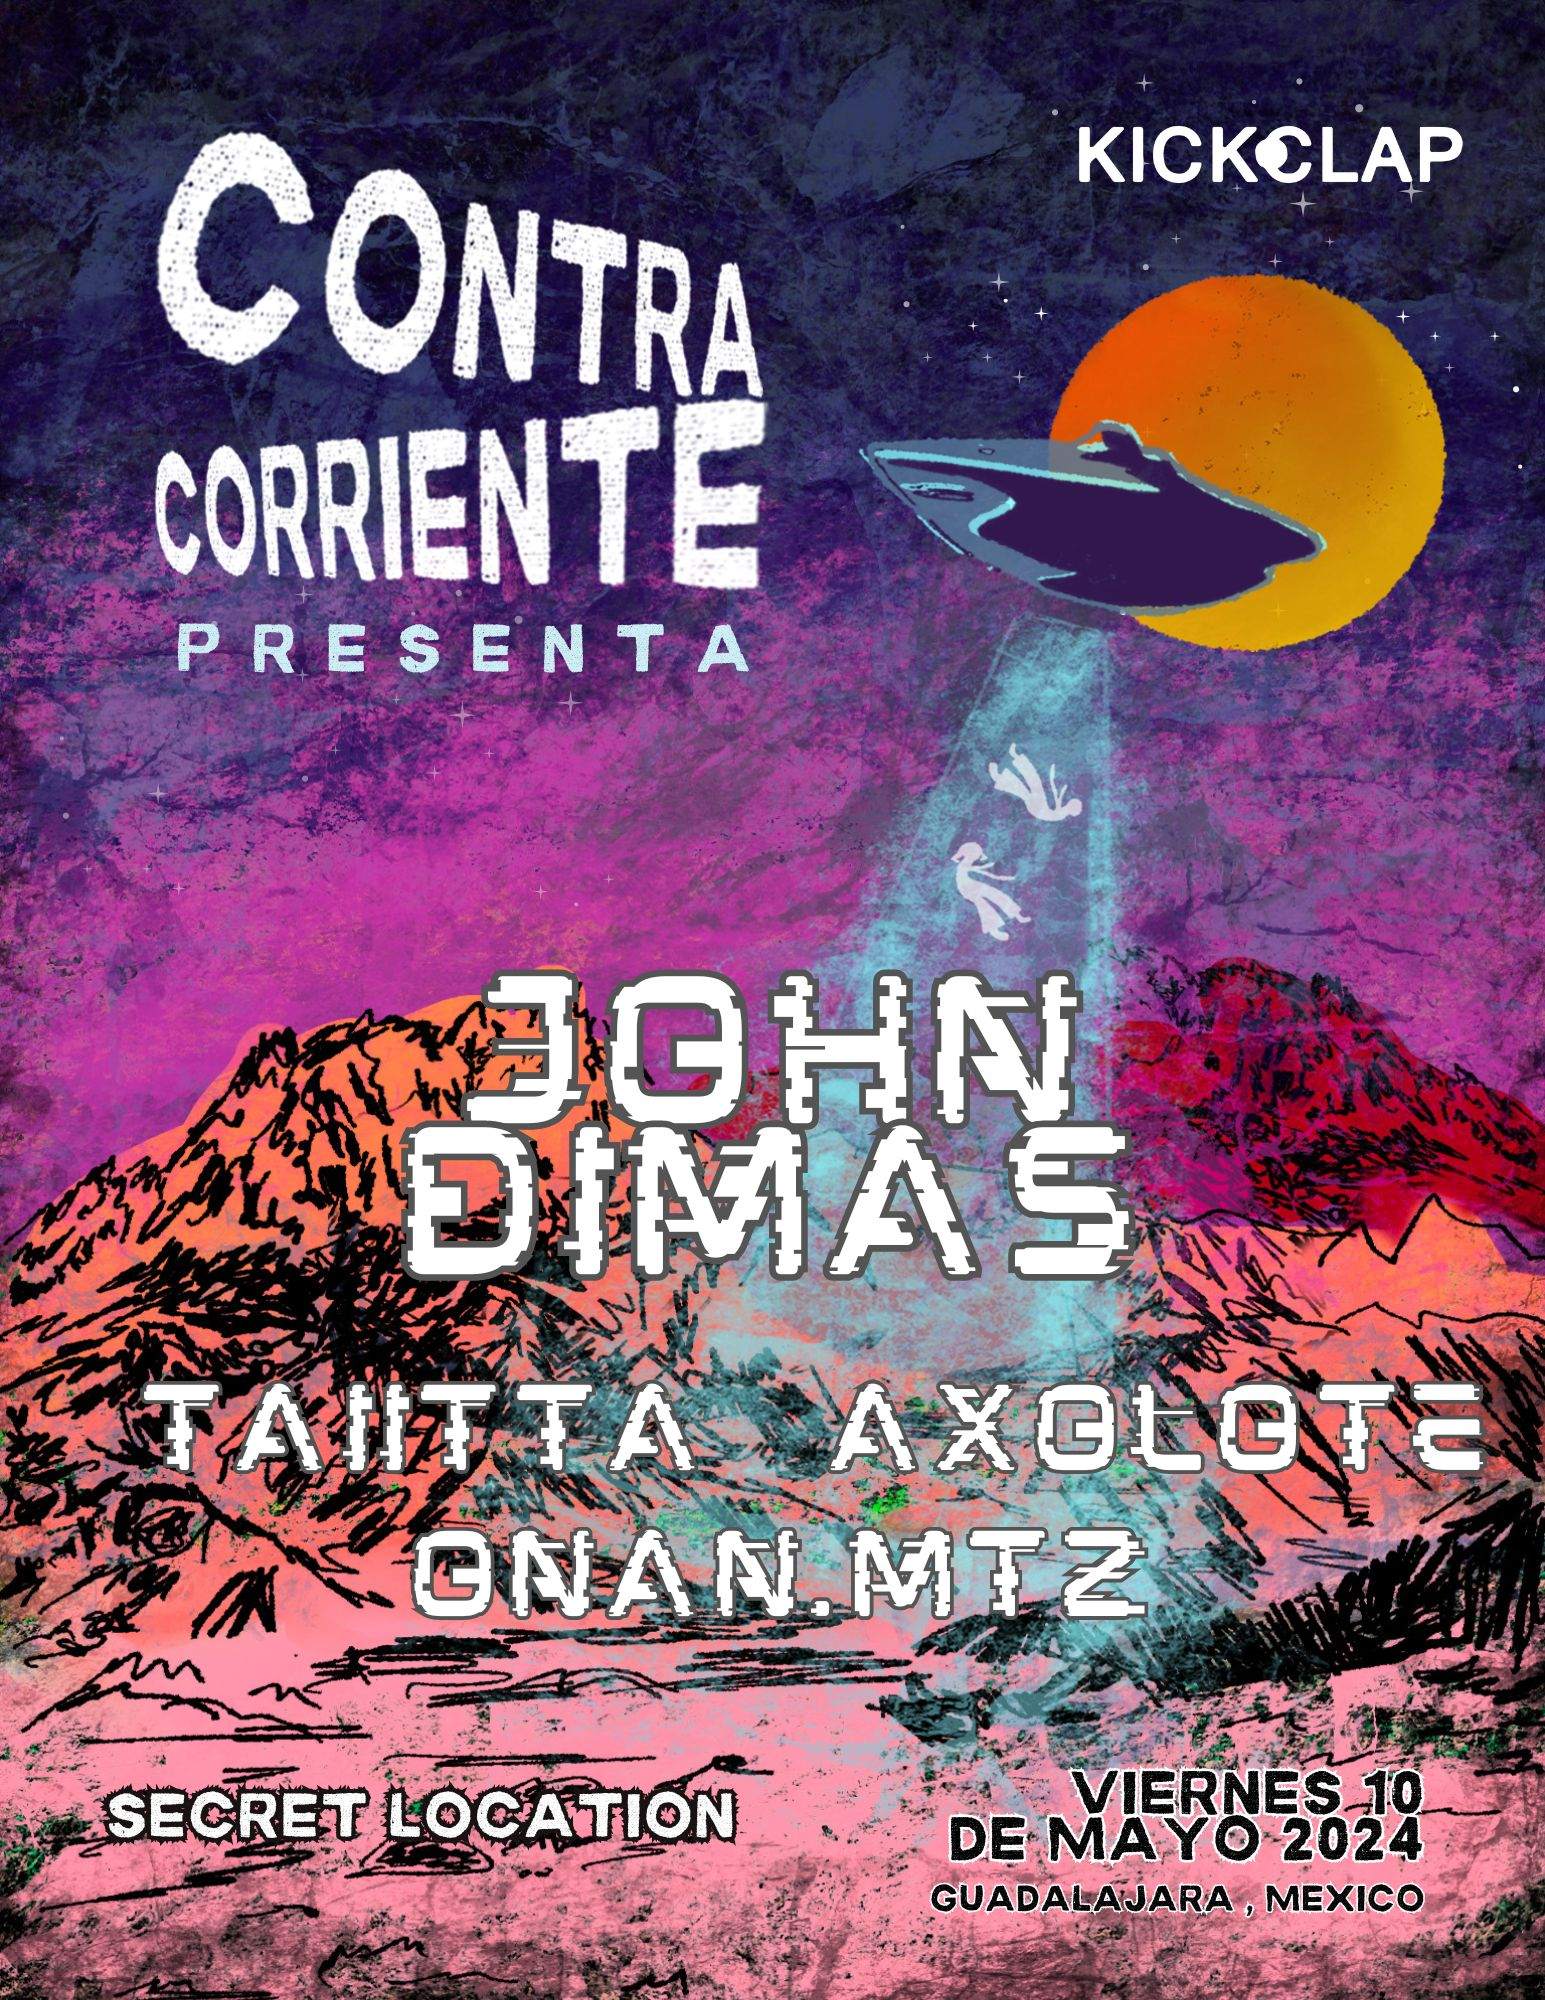 Contra Corriente presenta a John Dimas - フライヤー裏